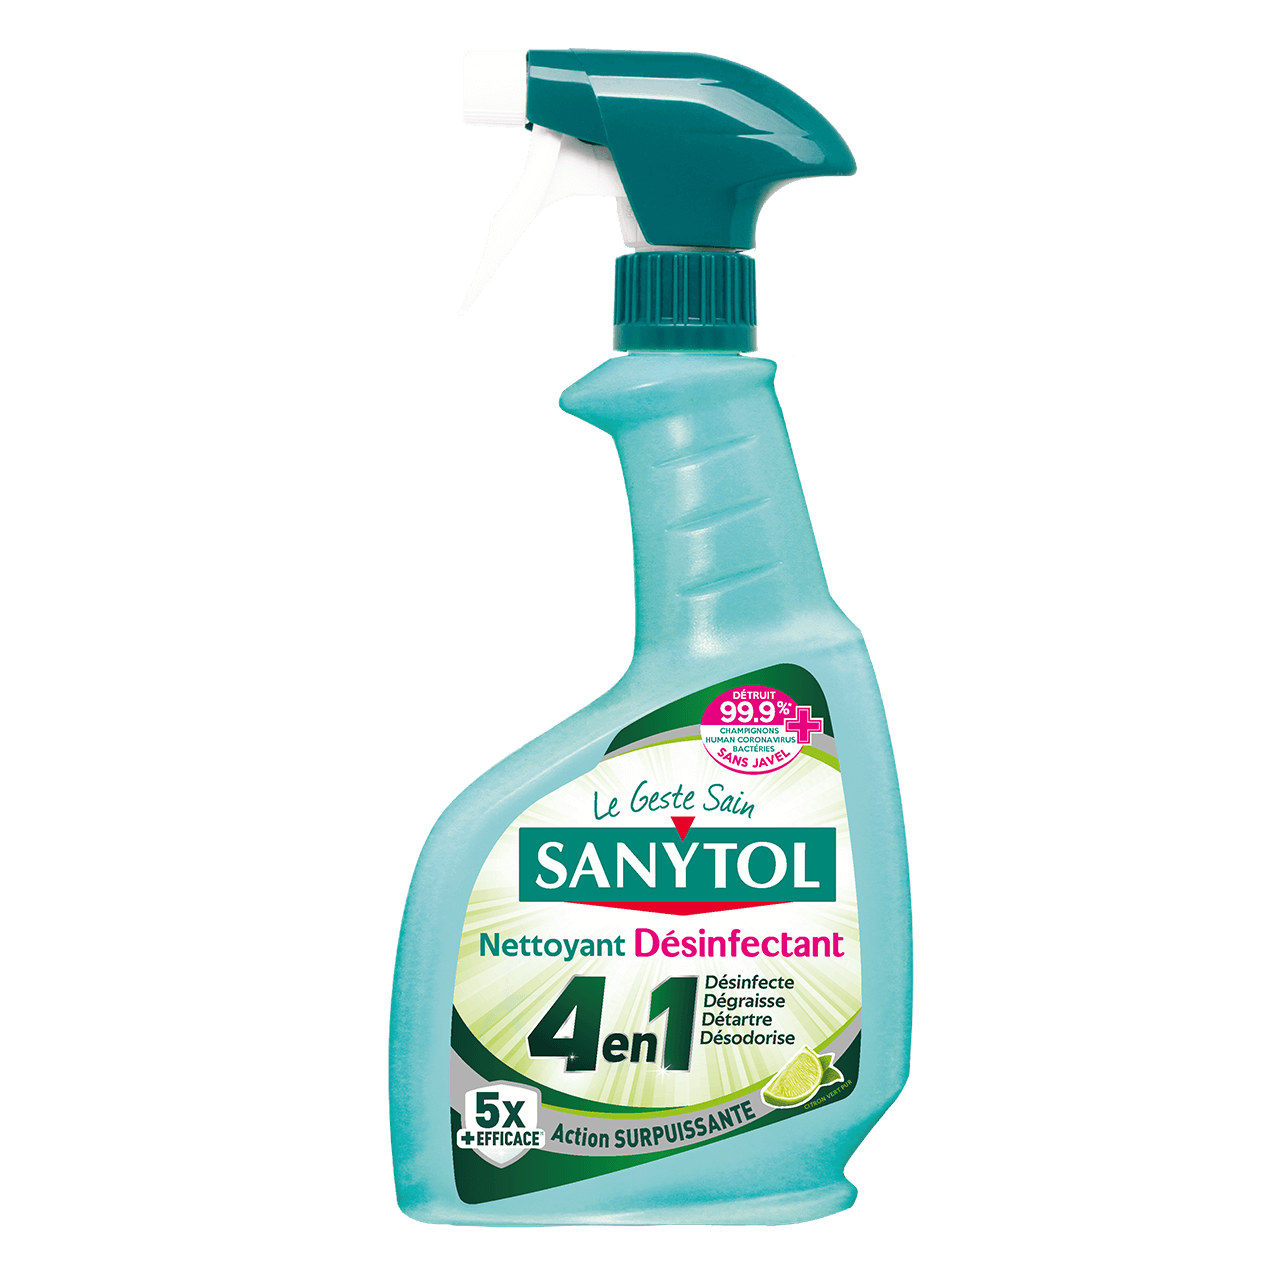 Sanytol nettoyant, désinfectant sans chlore – Droguerie Garrone